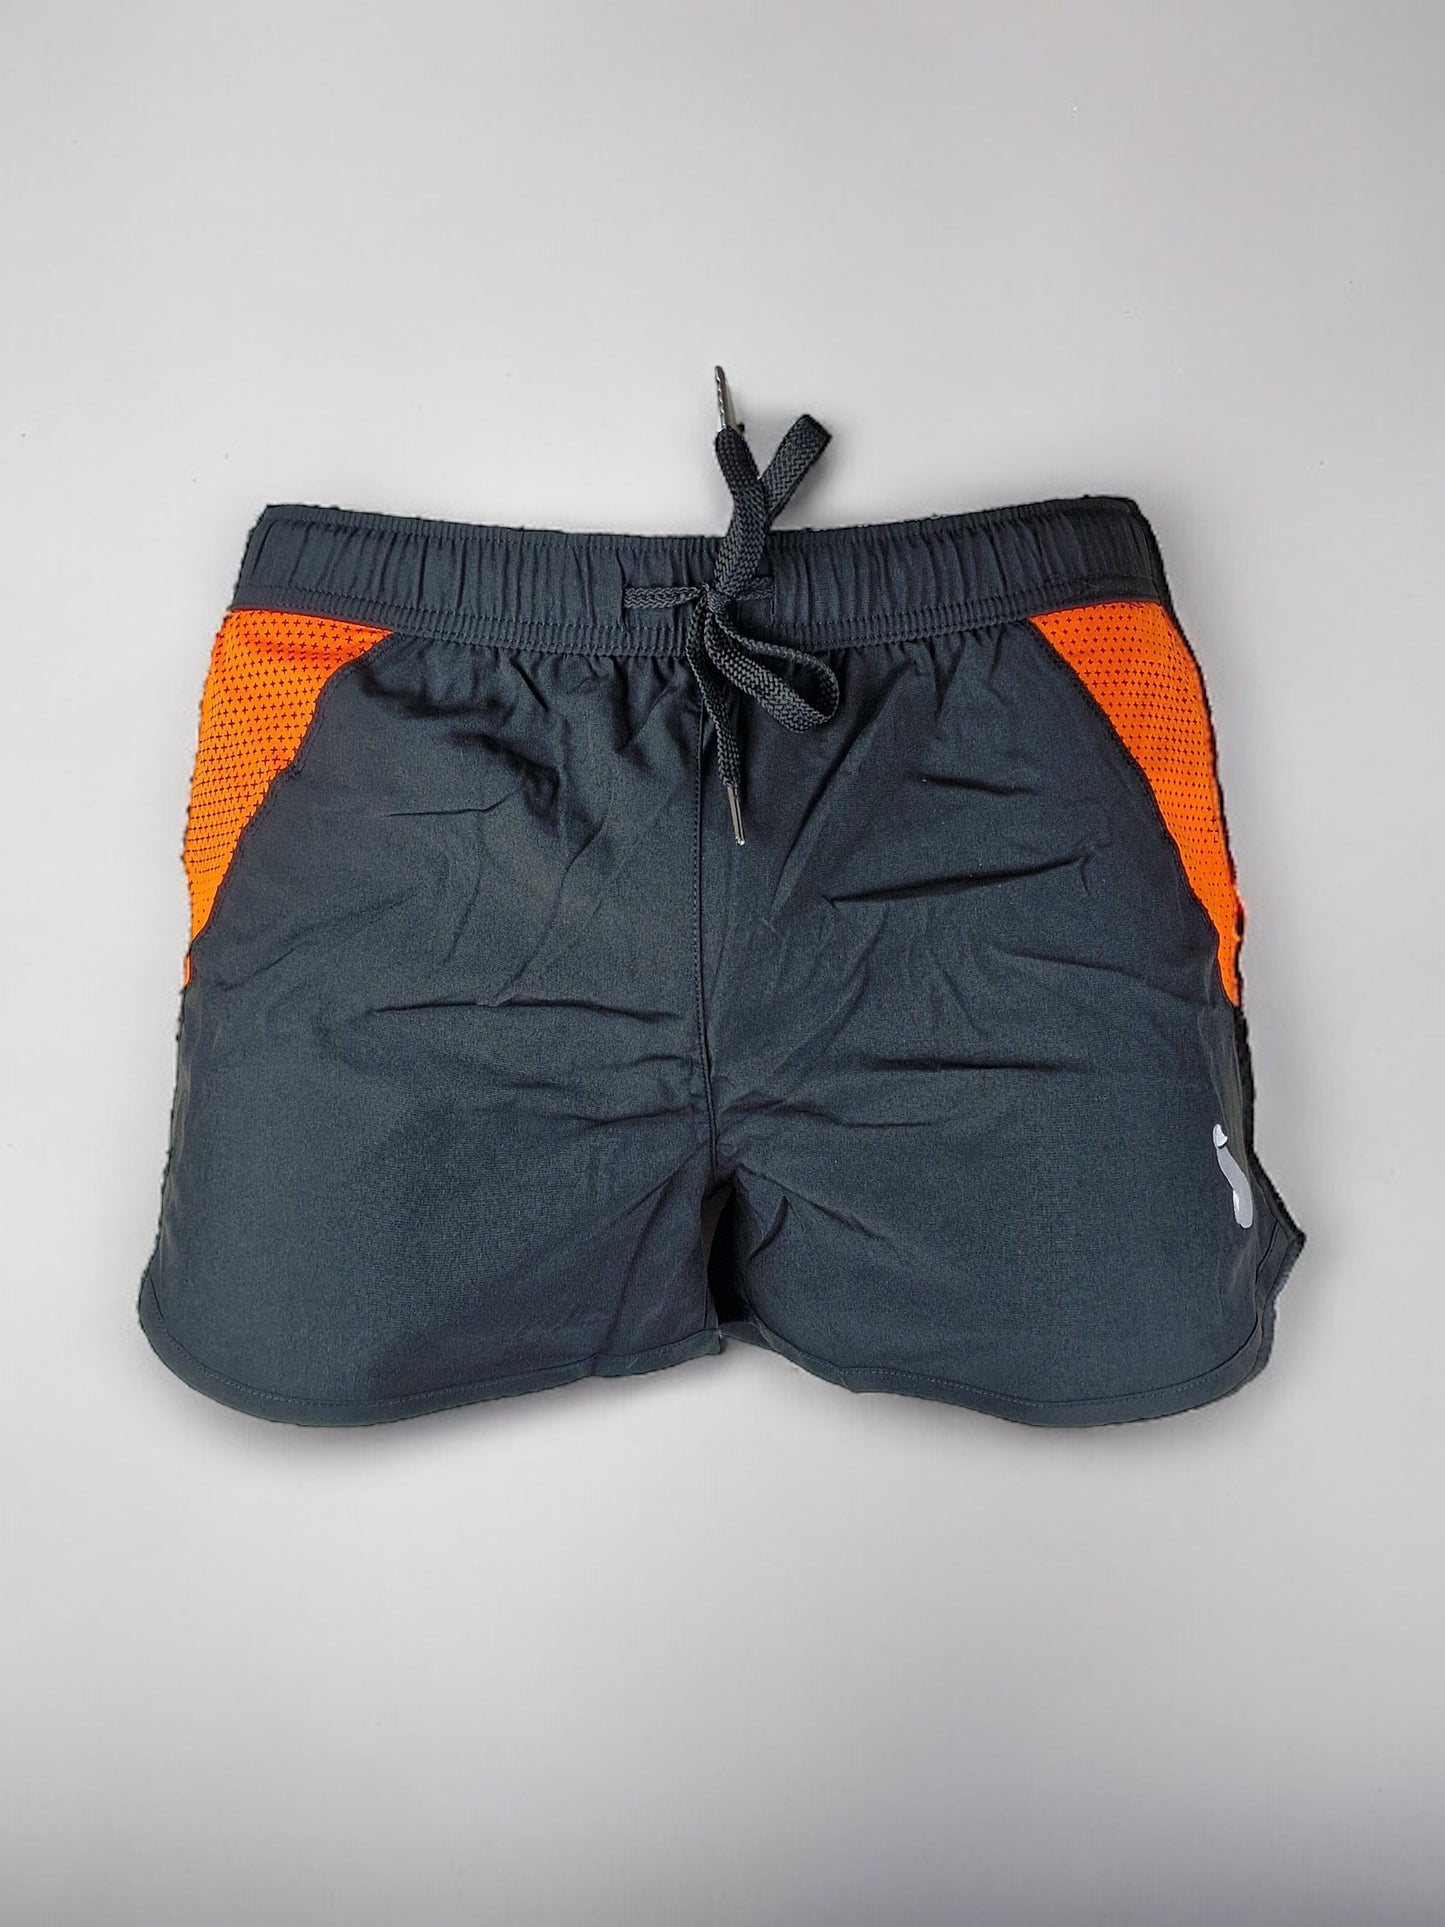 Shorts de entrenamiento / shorts de baño para hombres o unisex - Negro/Naranja